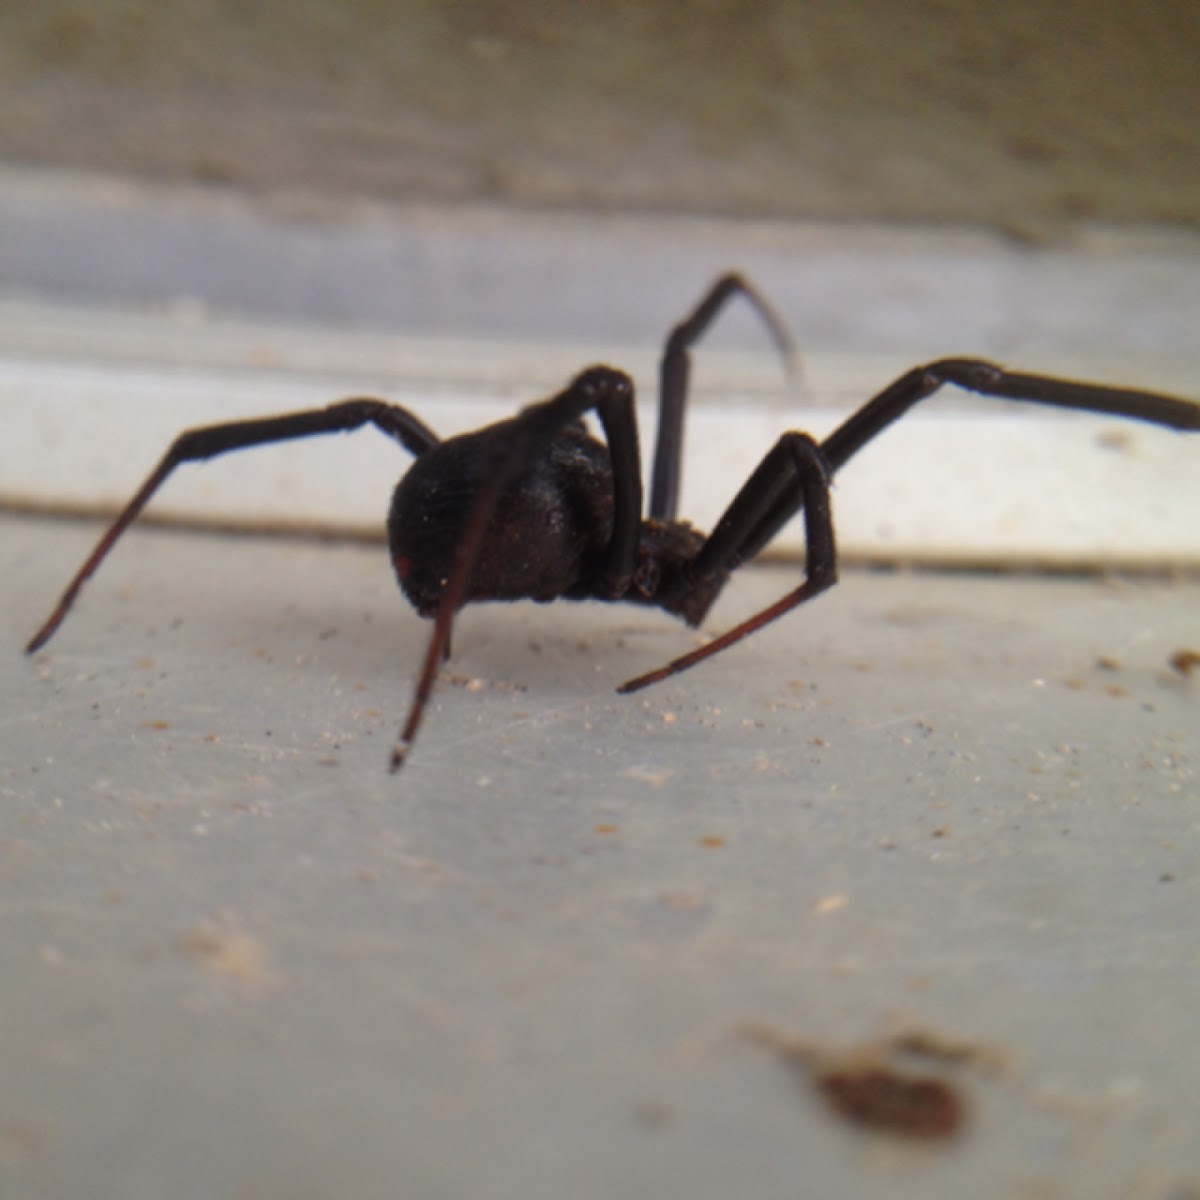 Spider - black widow-esque